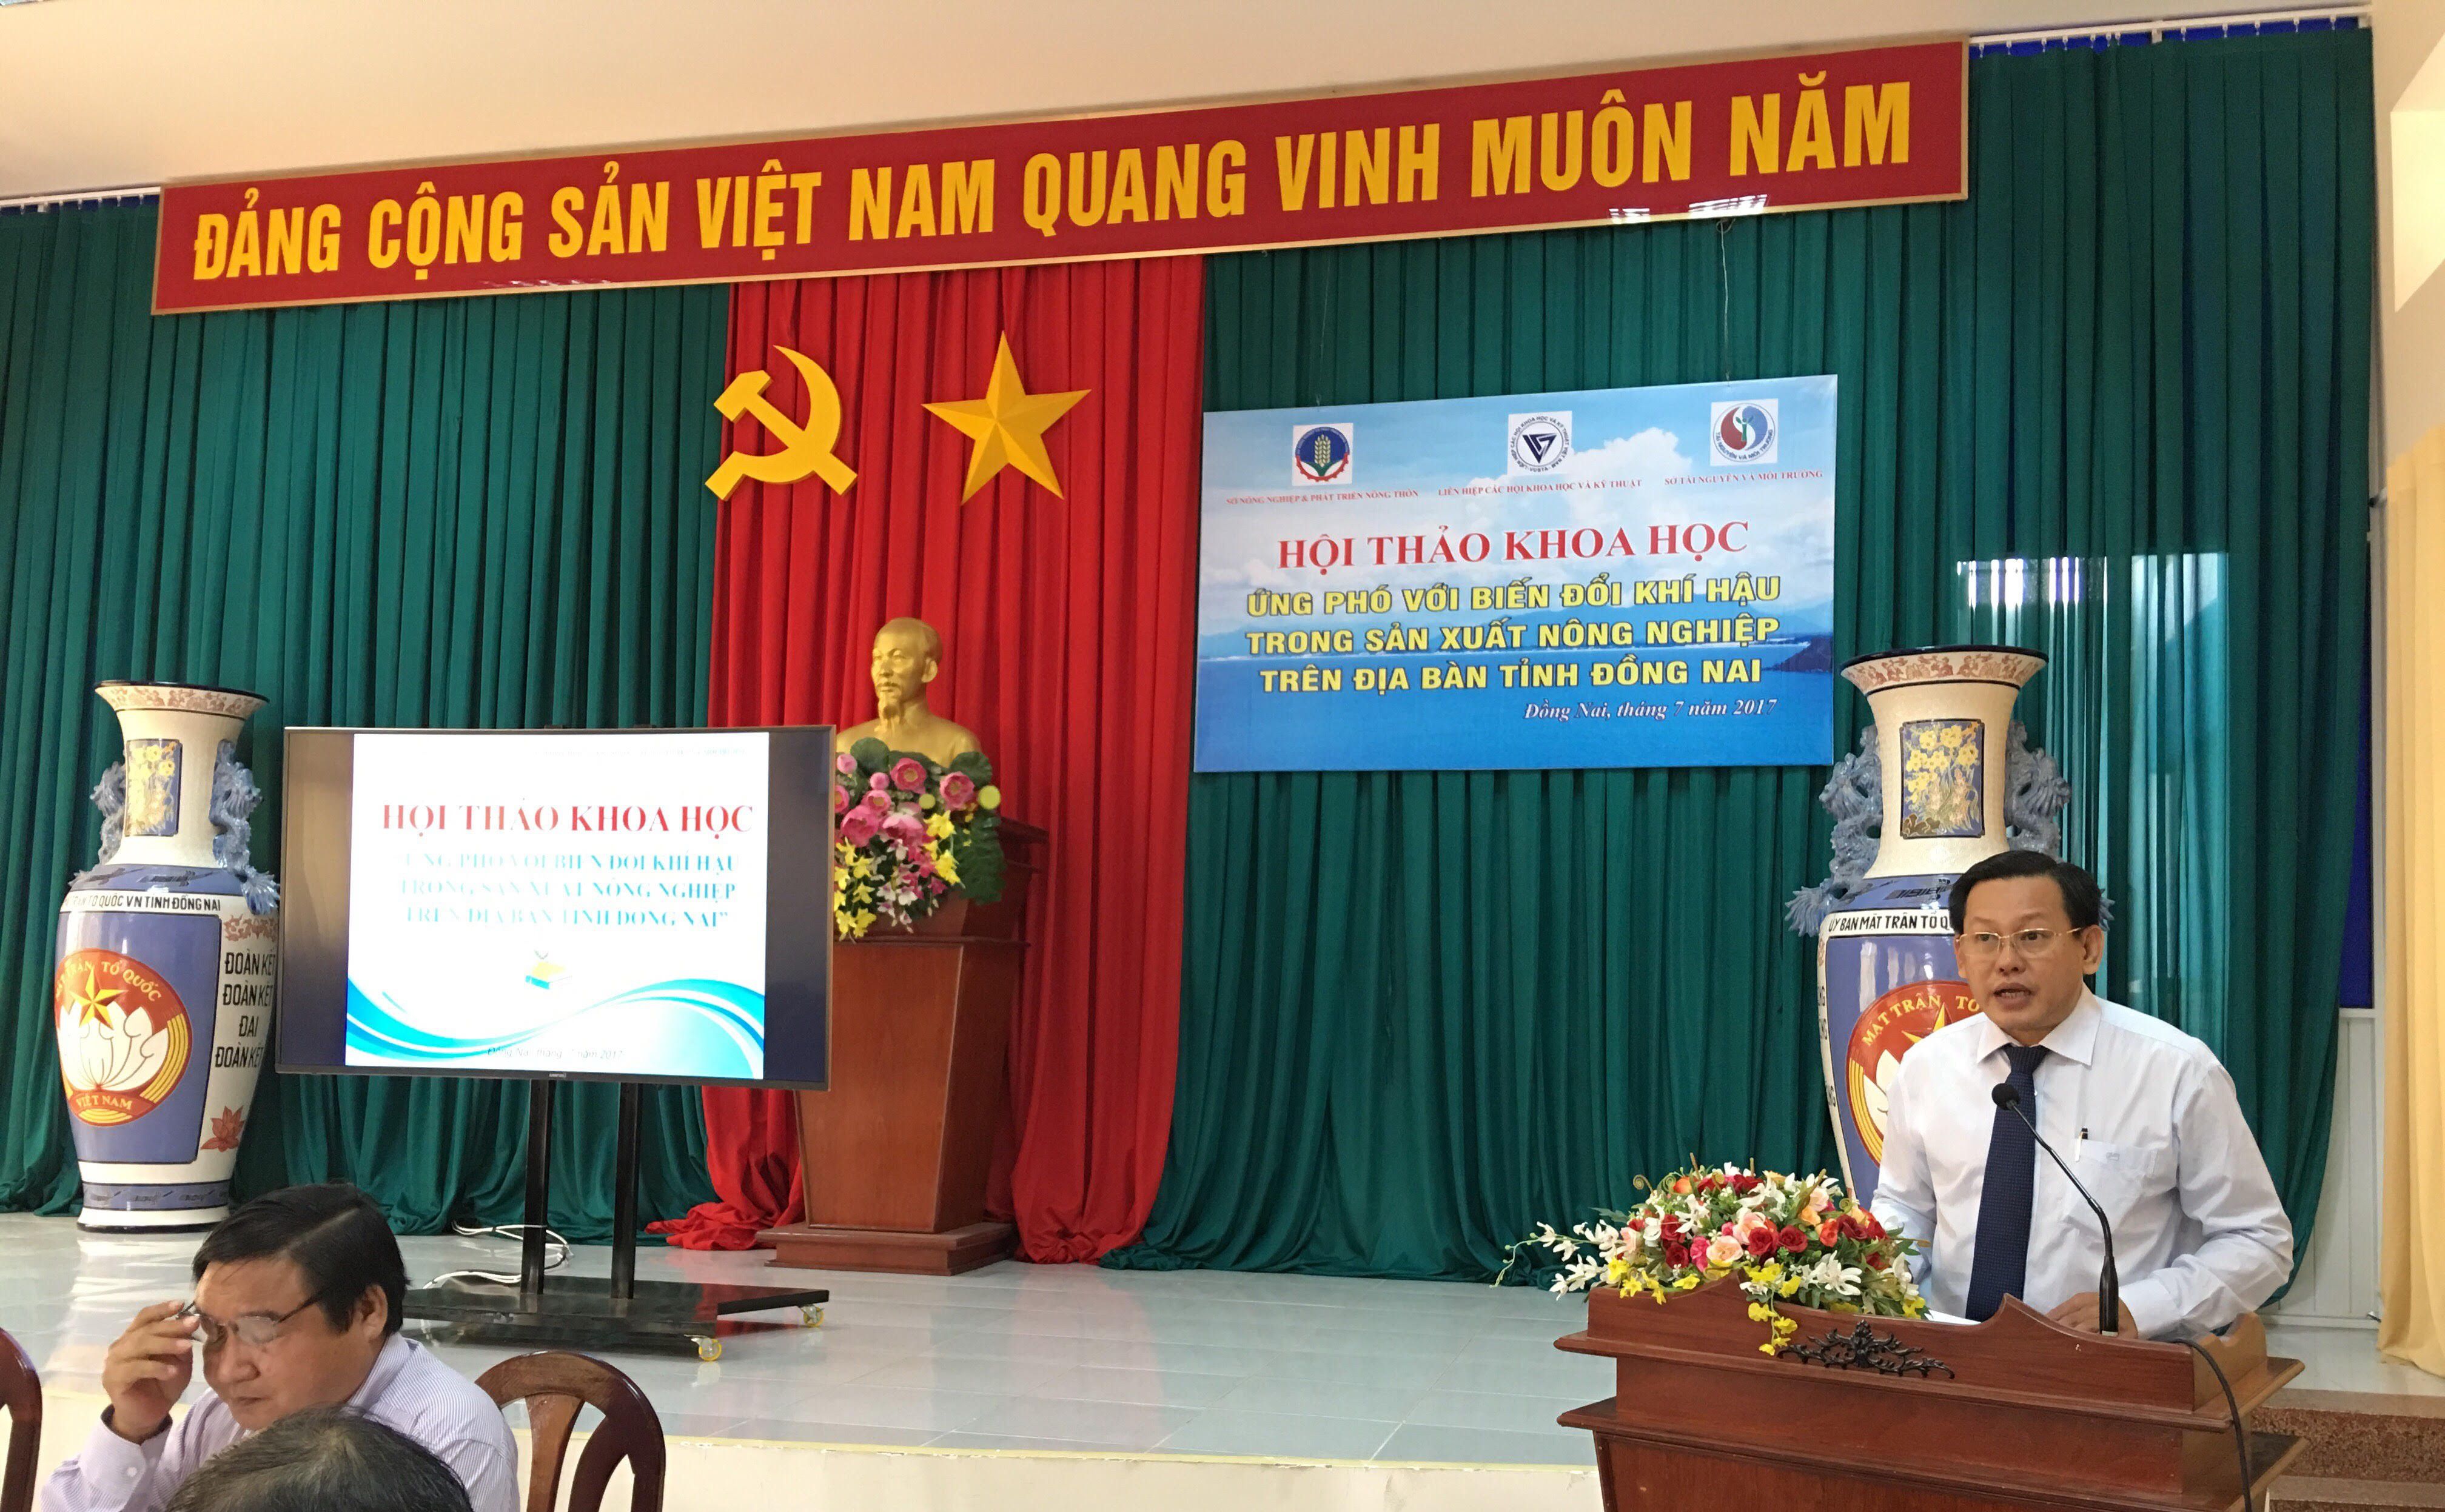 Hội thảo khoa học ứng phó với biến đổi khí hậu trong sản xuất nông nghiệp trên địa bàn tỉnh Đồng Nai